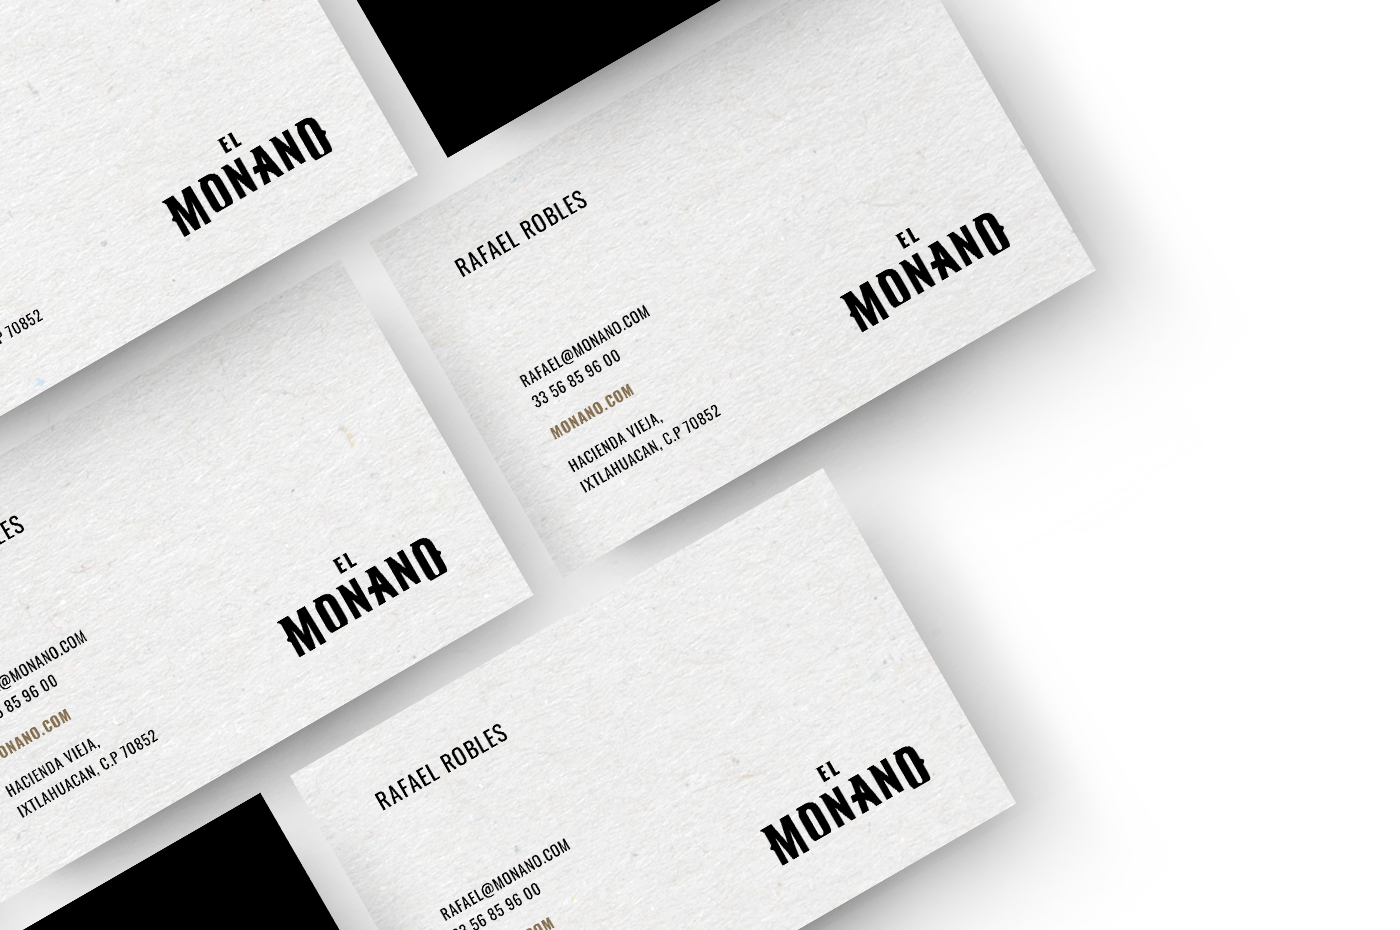 tequila monano branding tarjetas